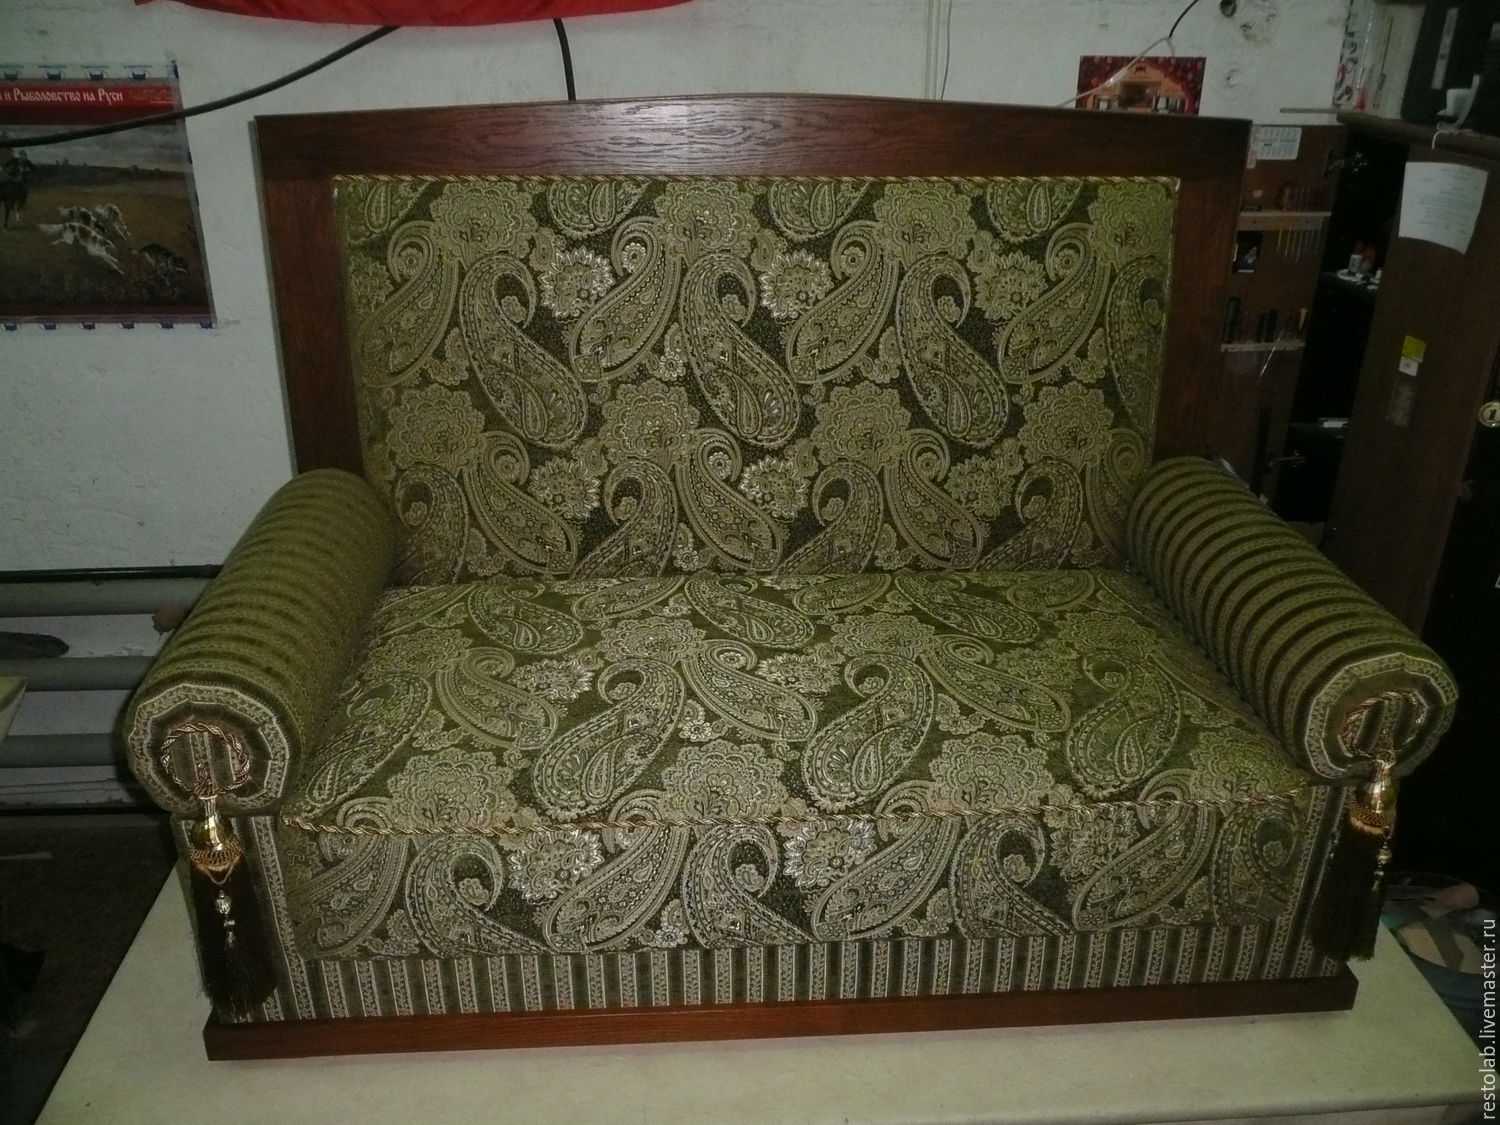 Реставрация дивана своими руками фото: старого, углового